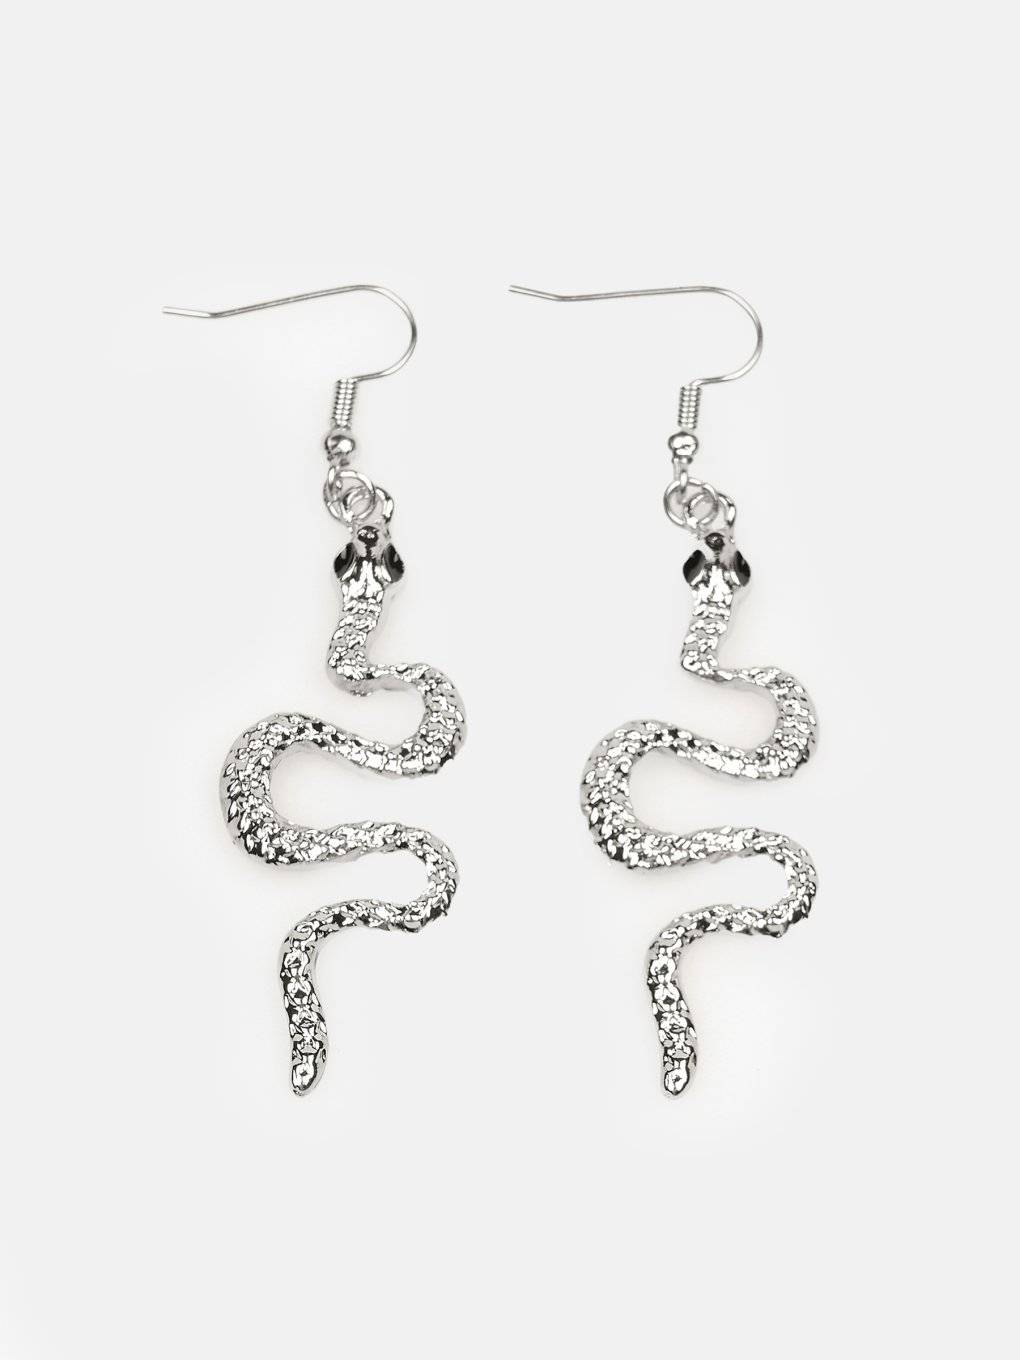 Earrings with snake design pendant